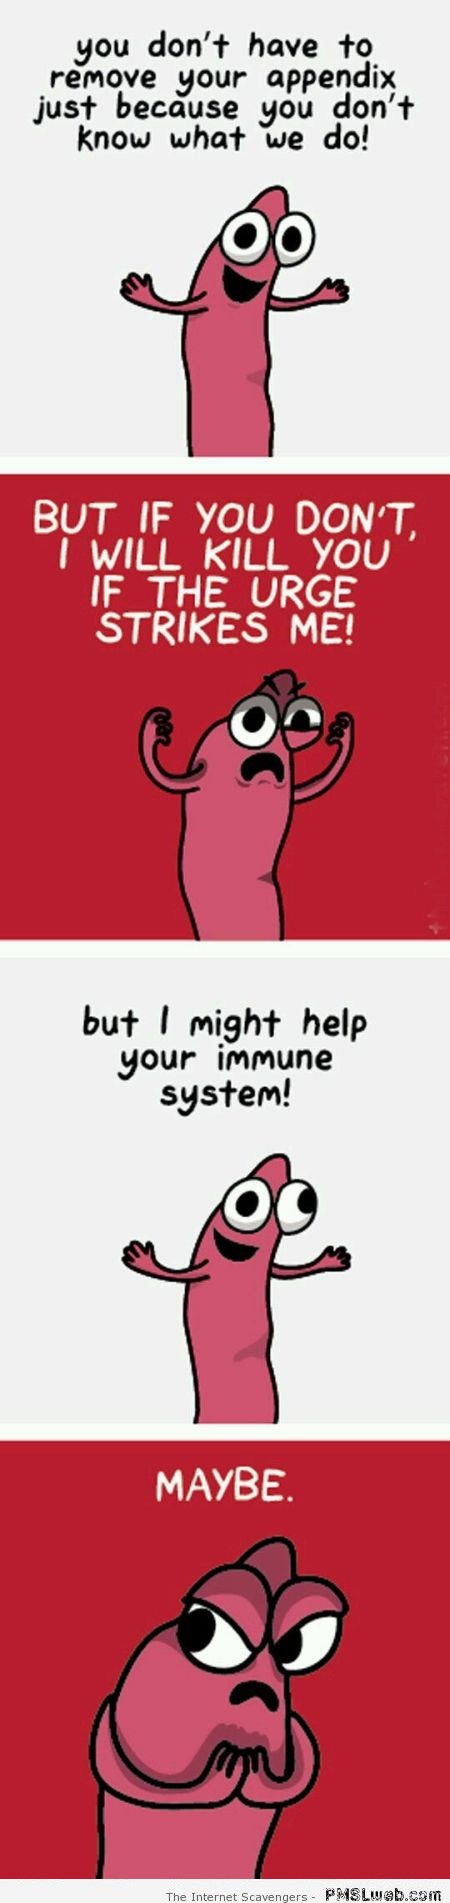 Funny appendix humor at PMSLweb.com